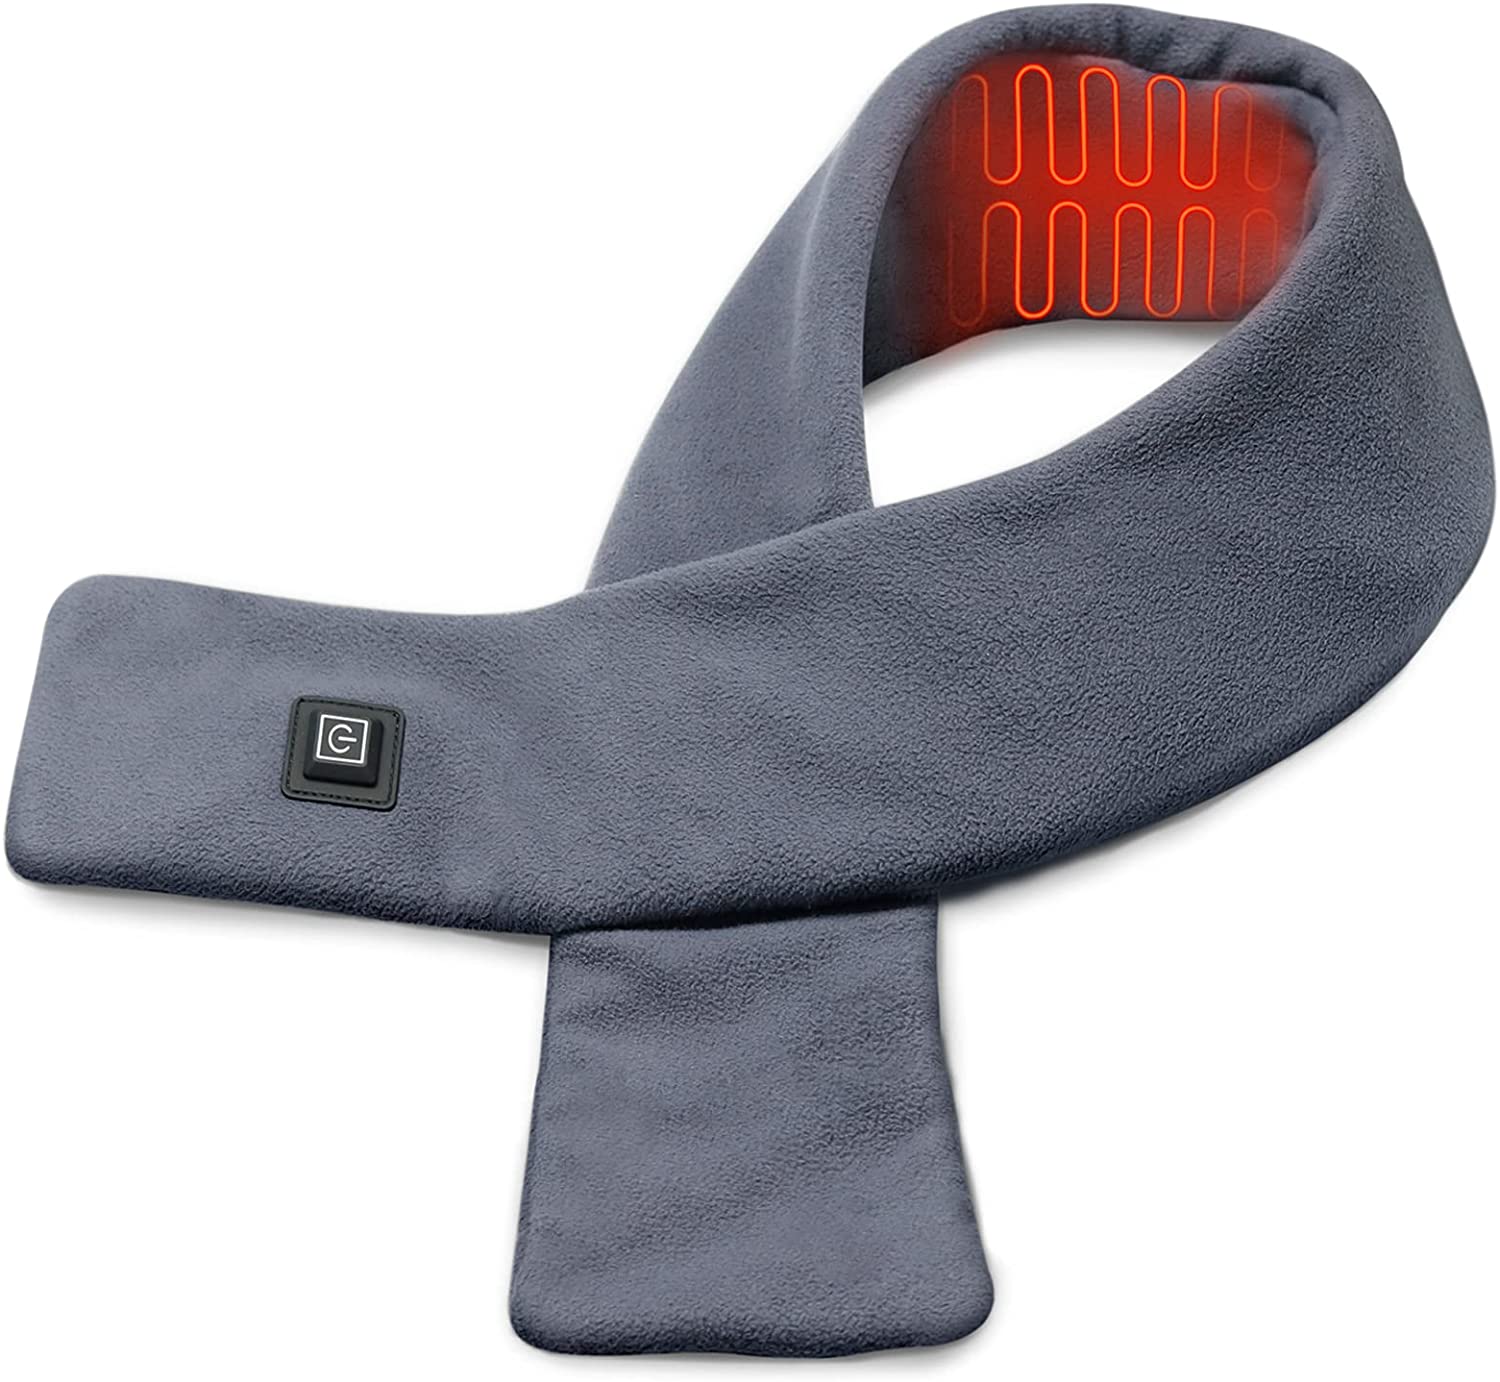 Coussin chauffant infrarouge gonflable pour les types de cou, la conception et les avantages 2